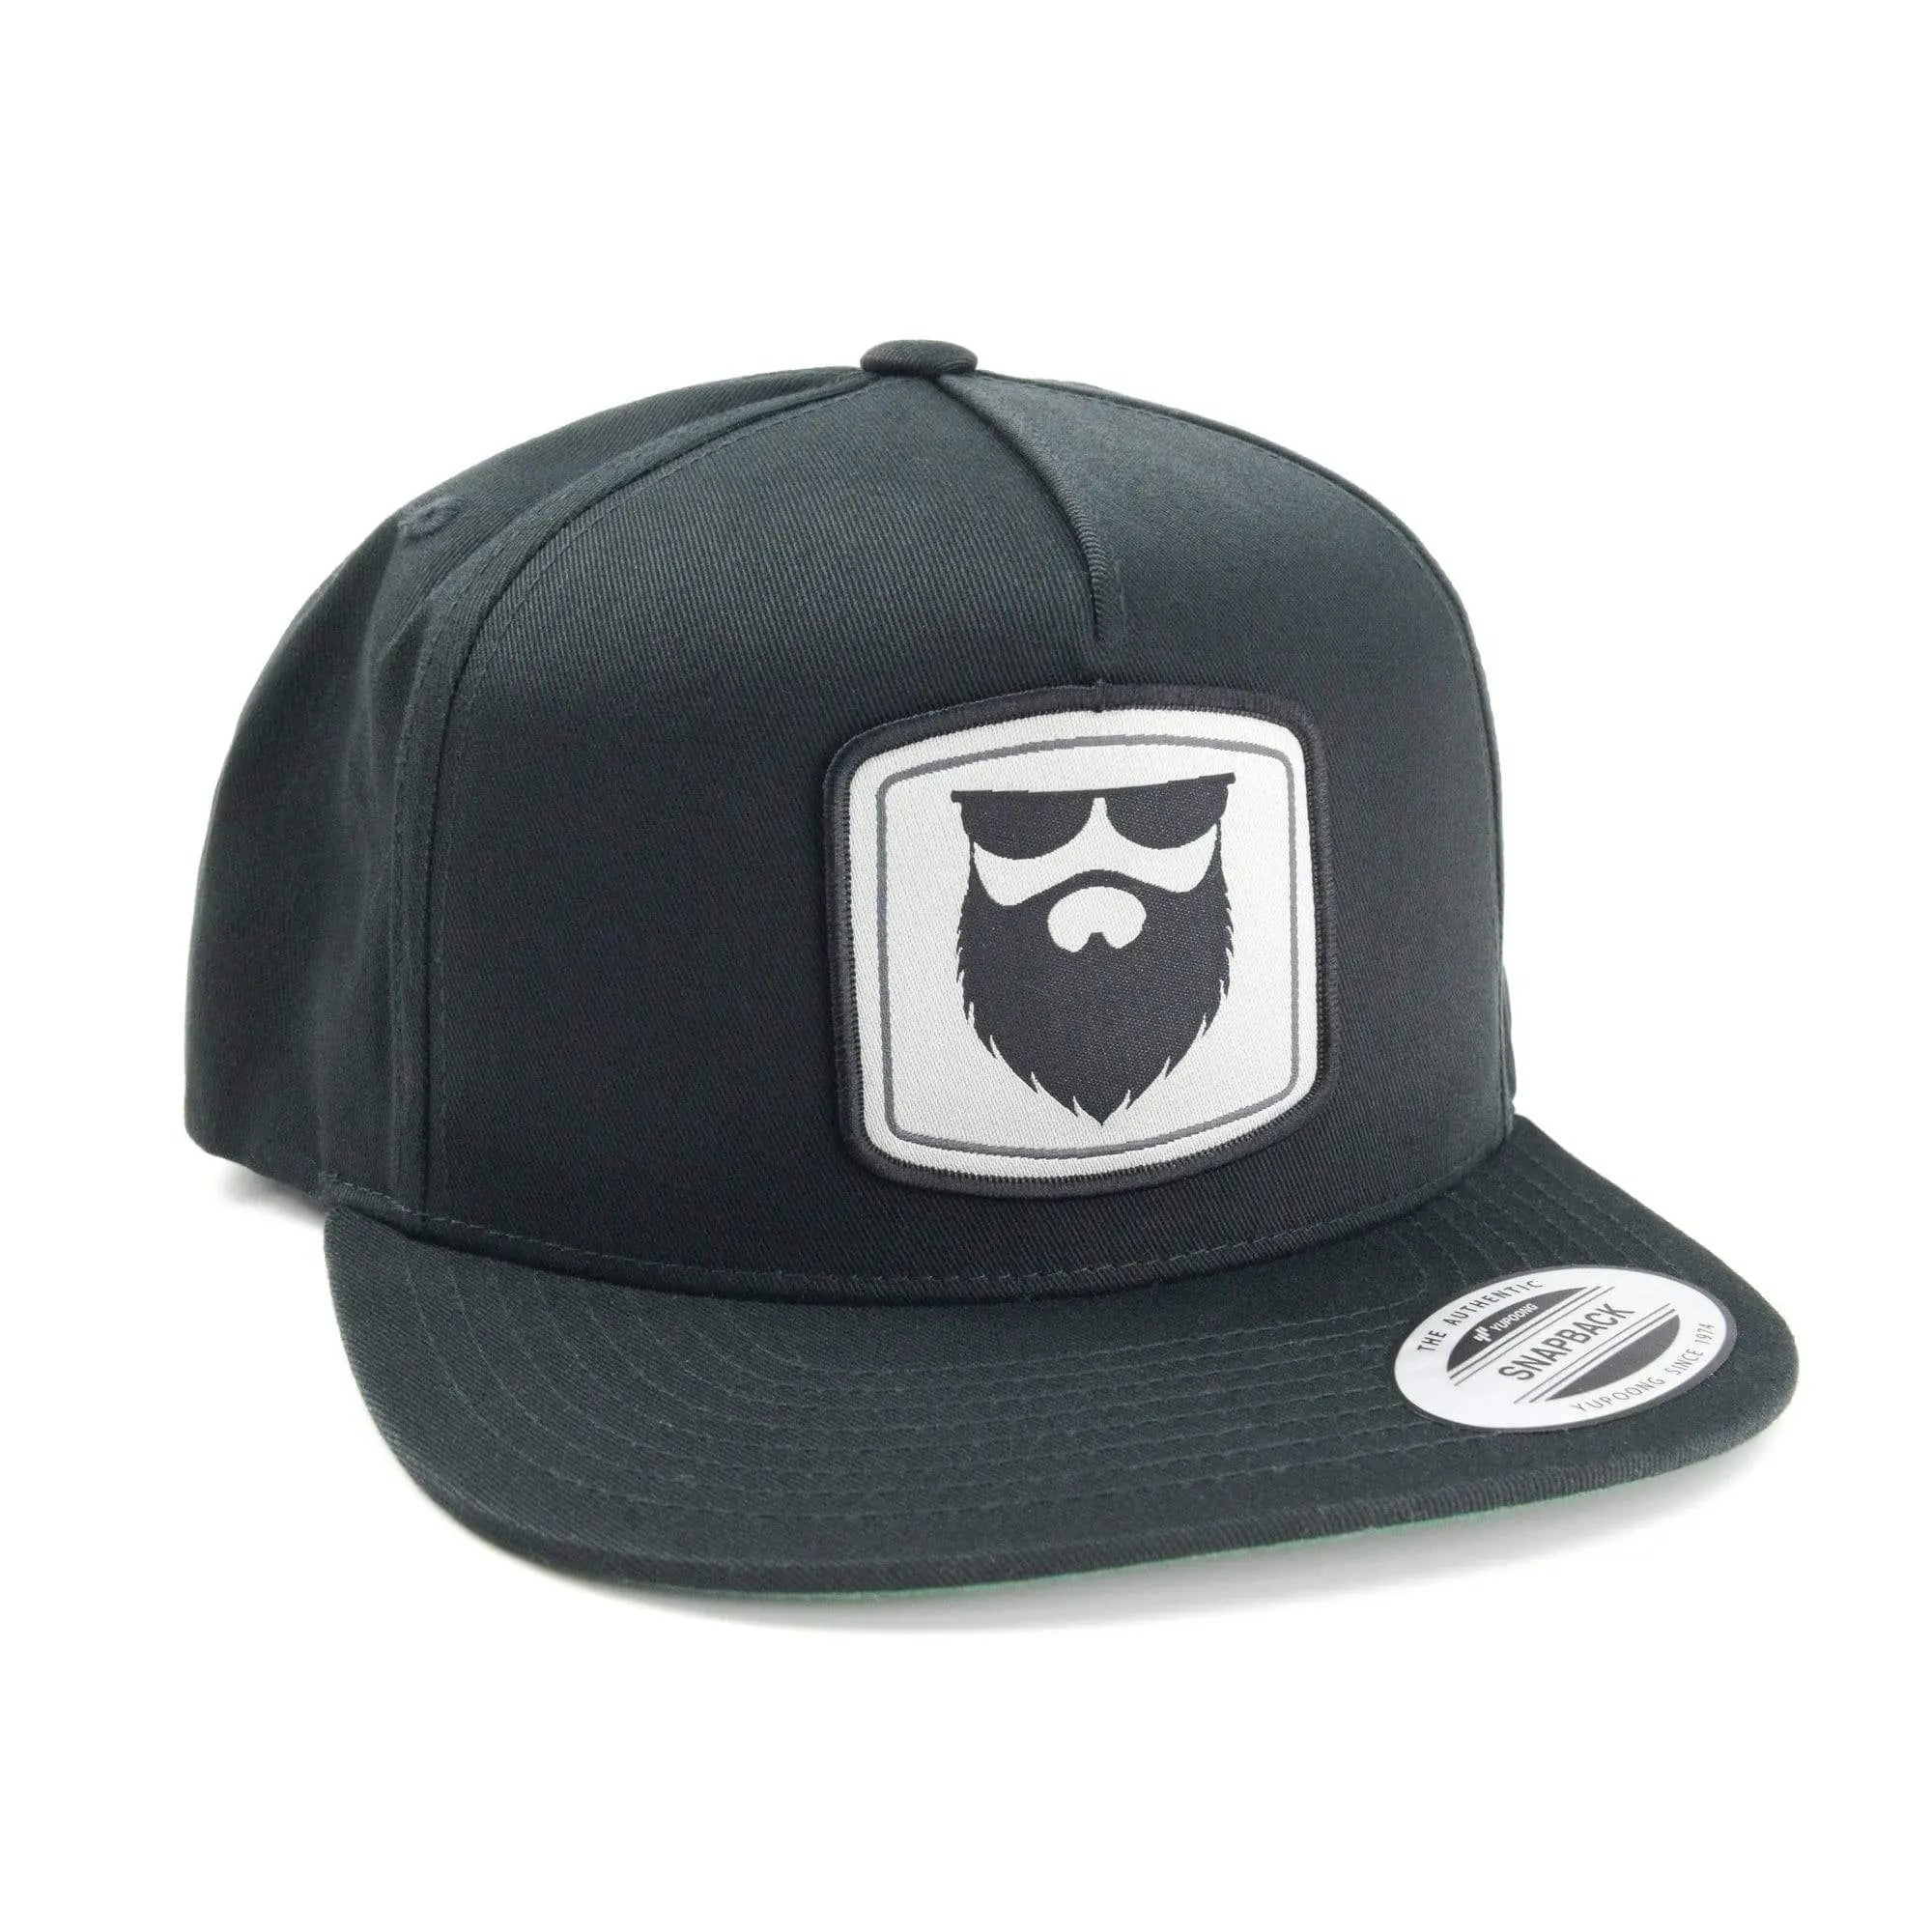 NSL Beard Gear Snapback - Black|Hat